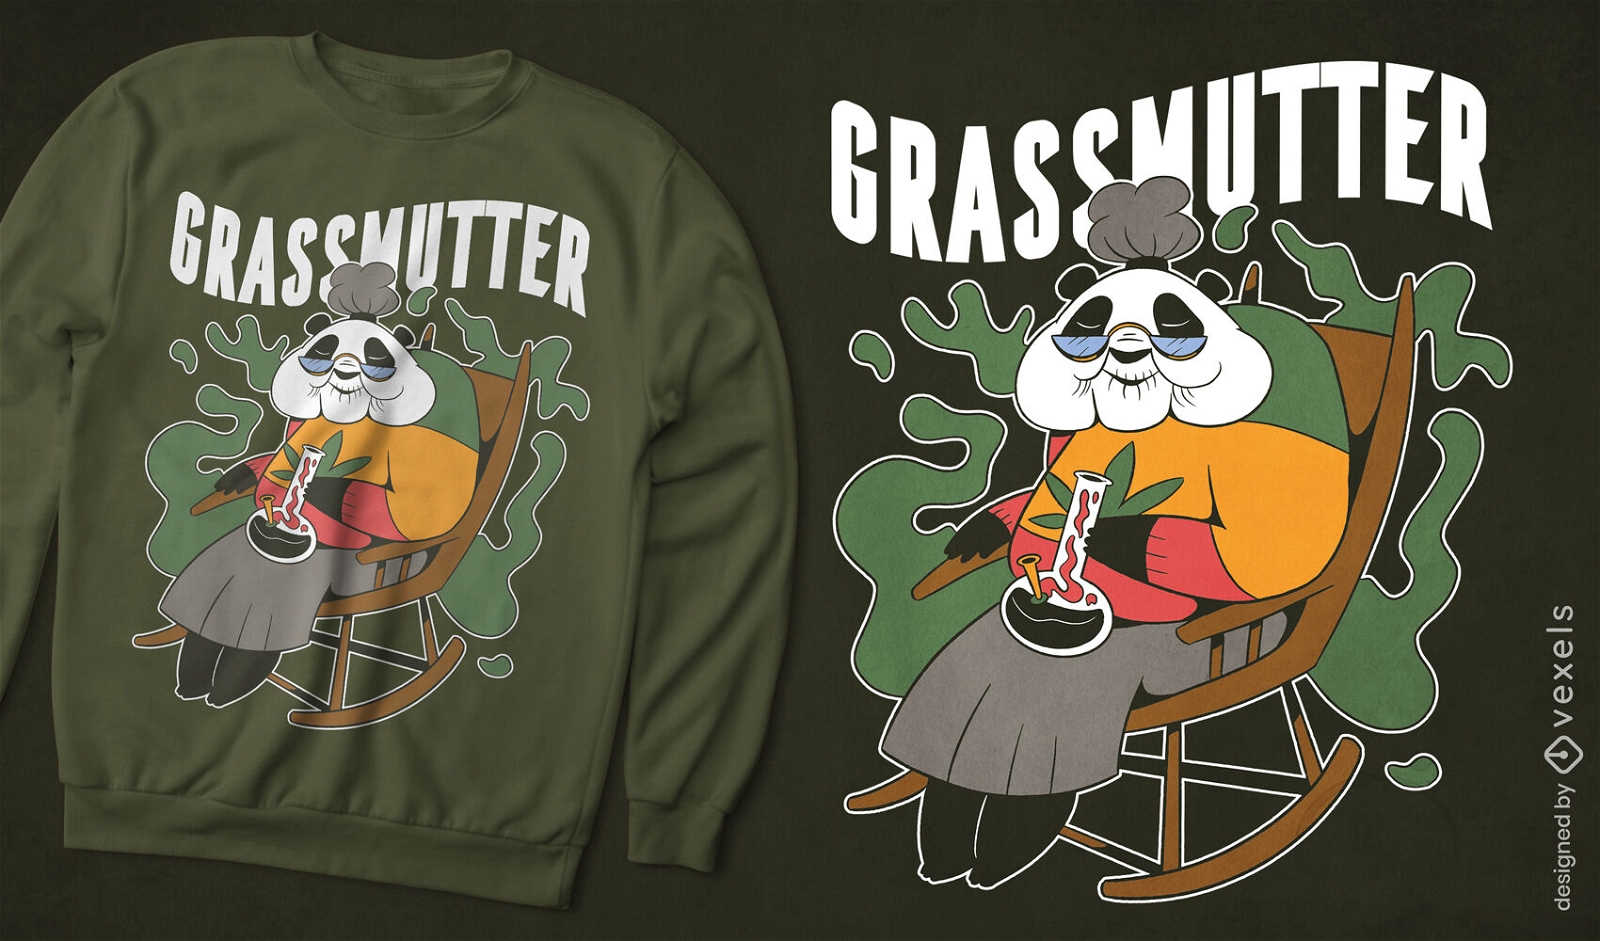 Old panda bear grandmother t-shirt design